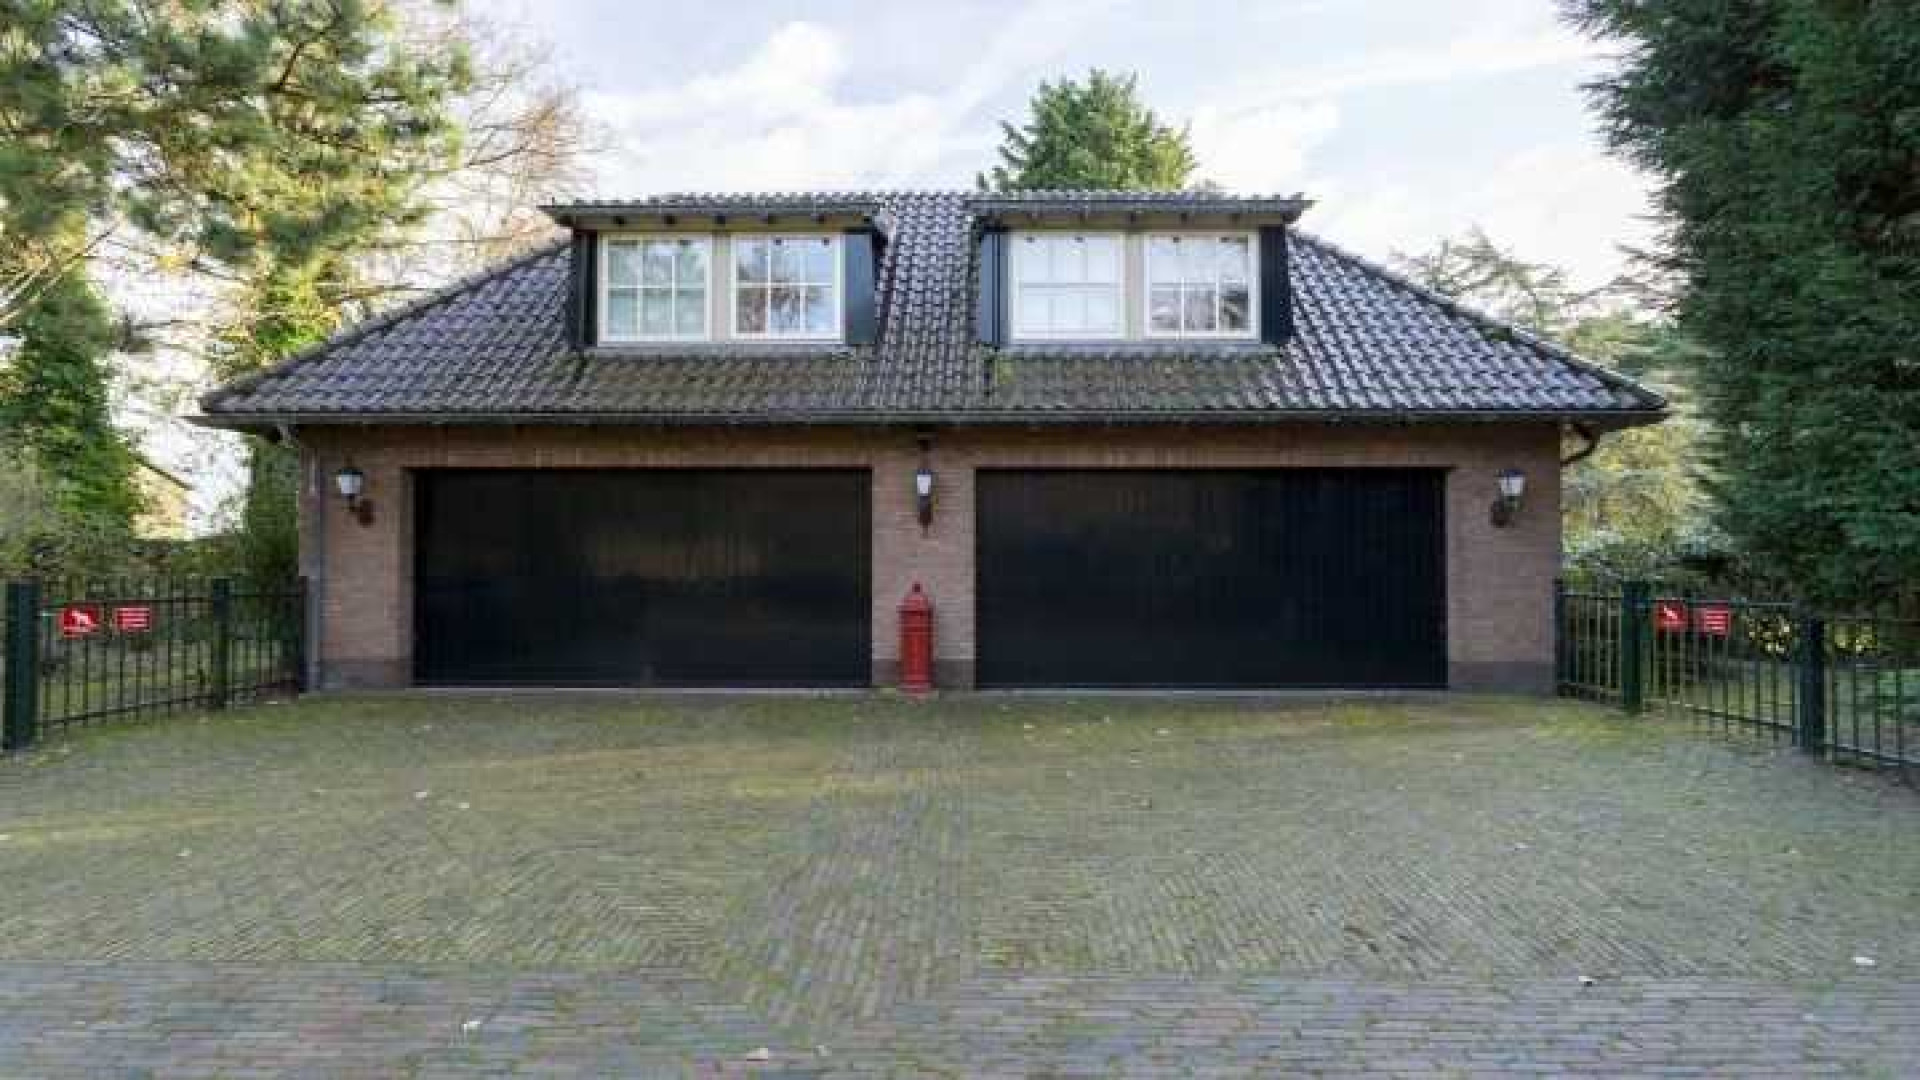 Binnenkijken in het totaal door ontwerper Piet Boon gerestylde huis van Henny Huisman. Zie foto's